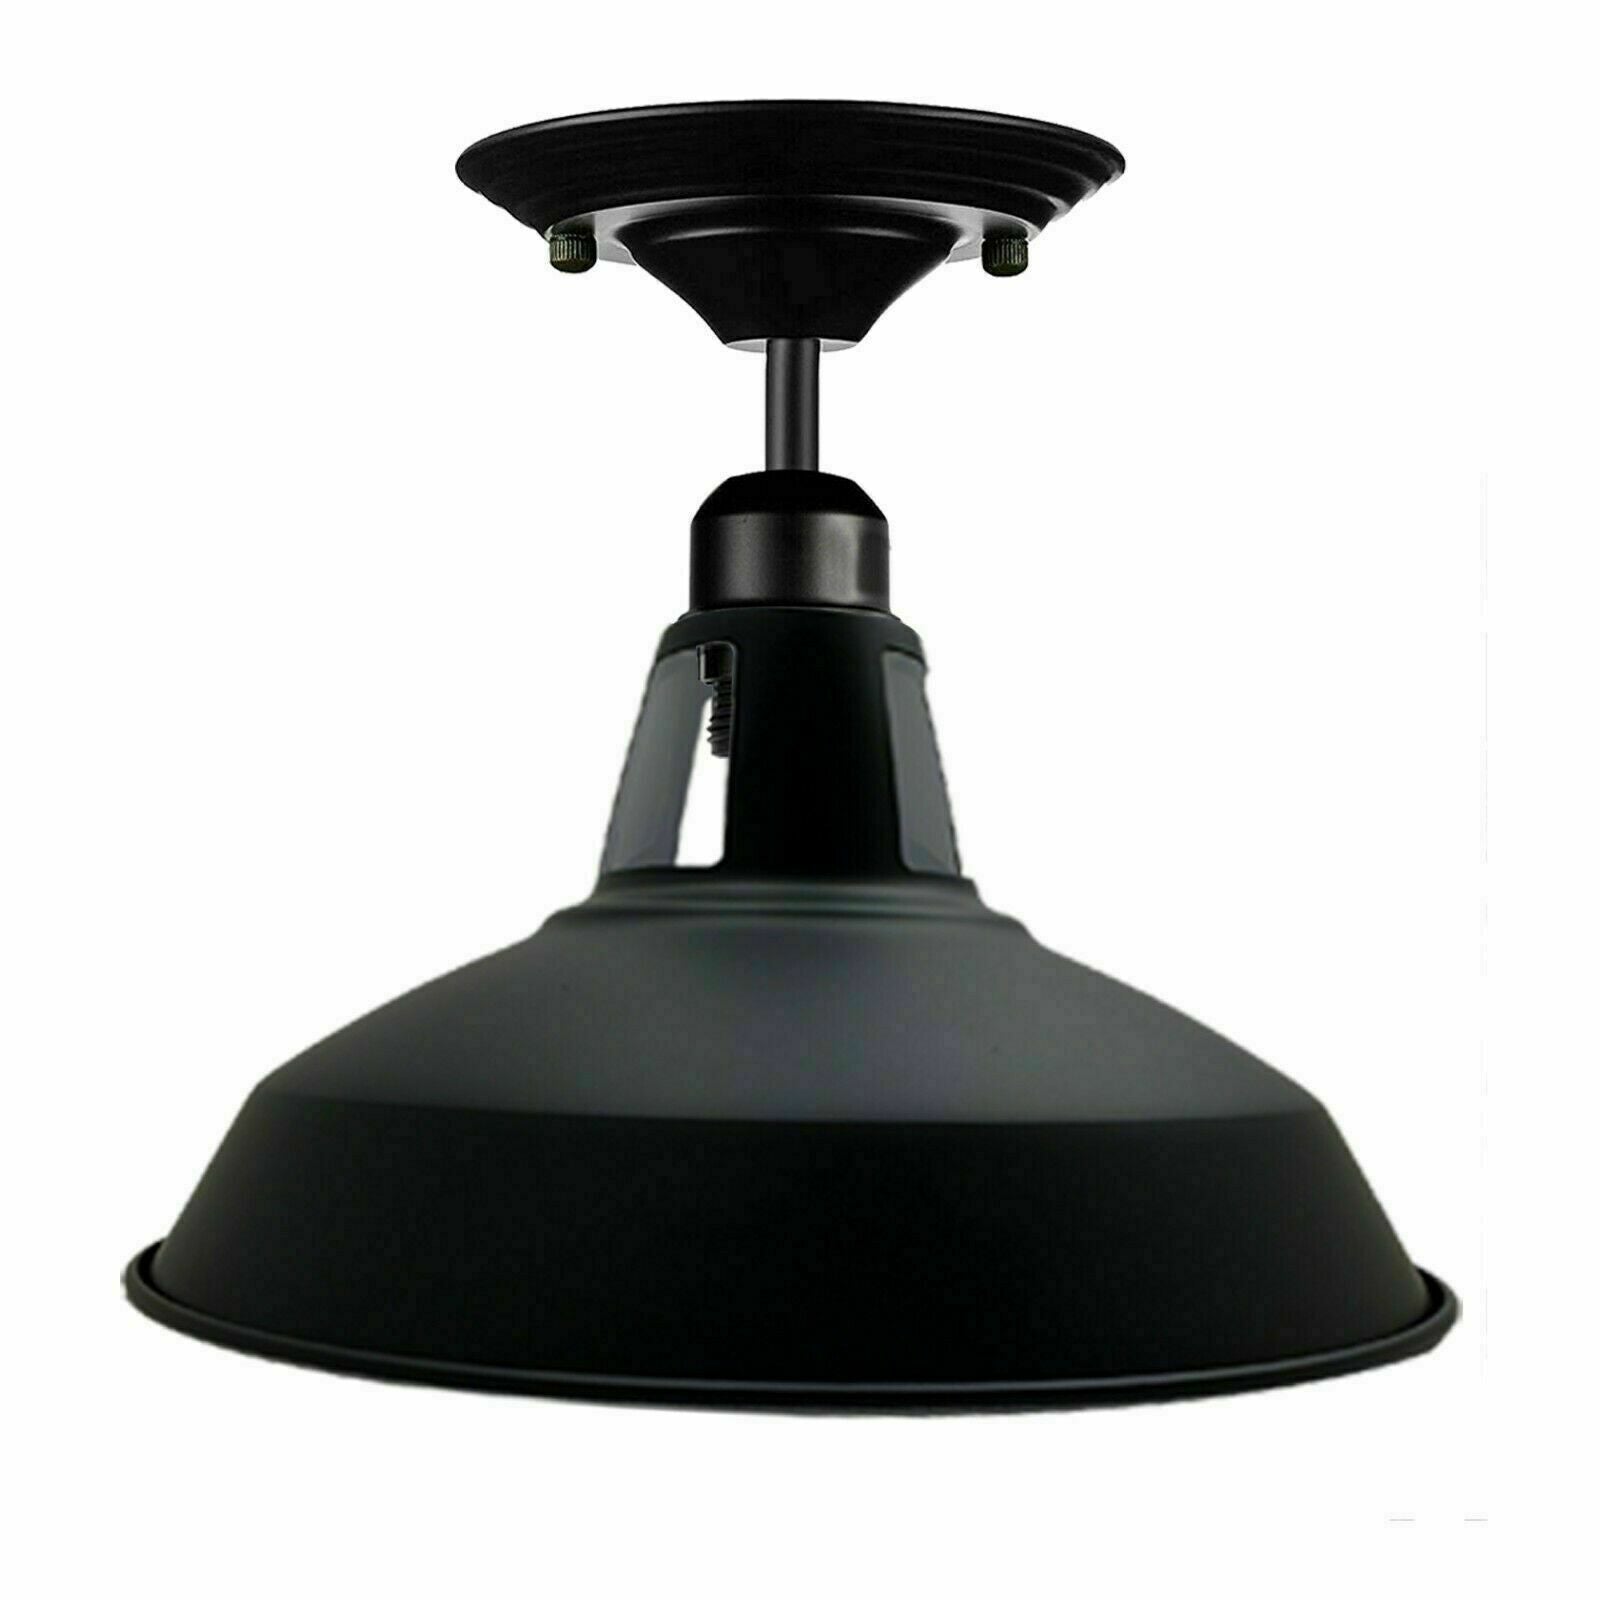 Schwarze Farbe ohne Glühbirne Retro  Vintage Ceiling Pendant Light  Hanging lamp Industrial design 240V